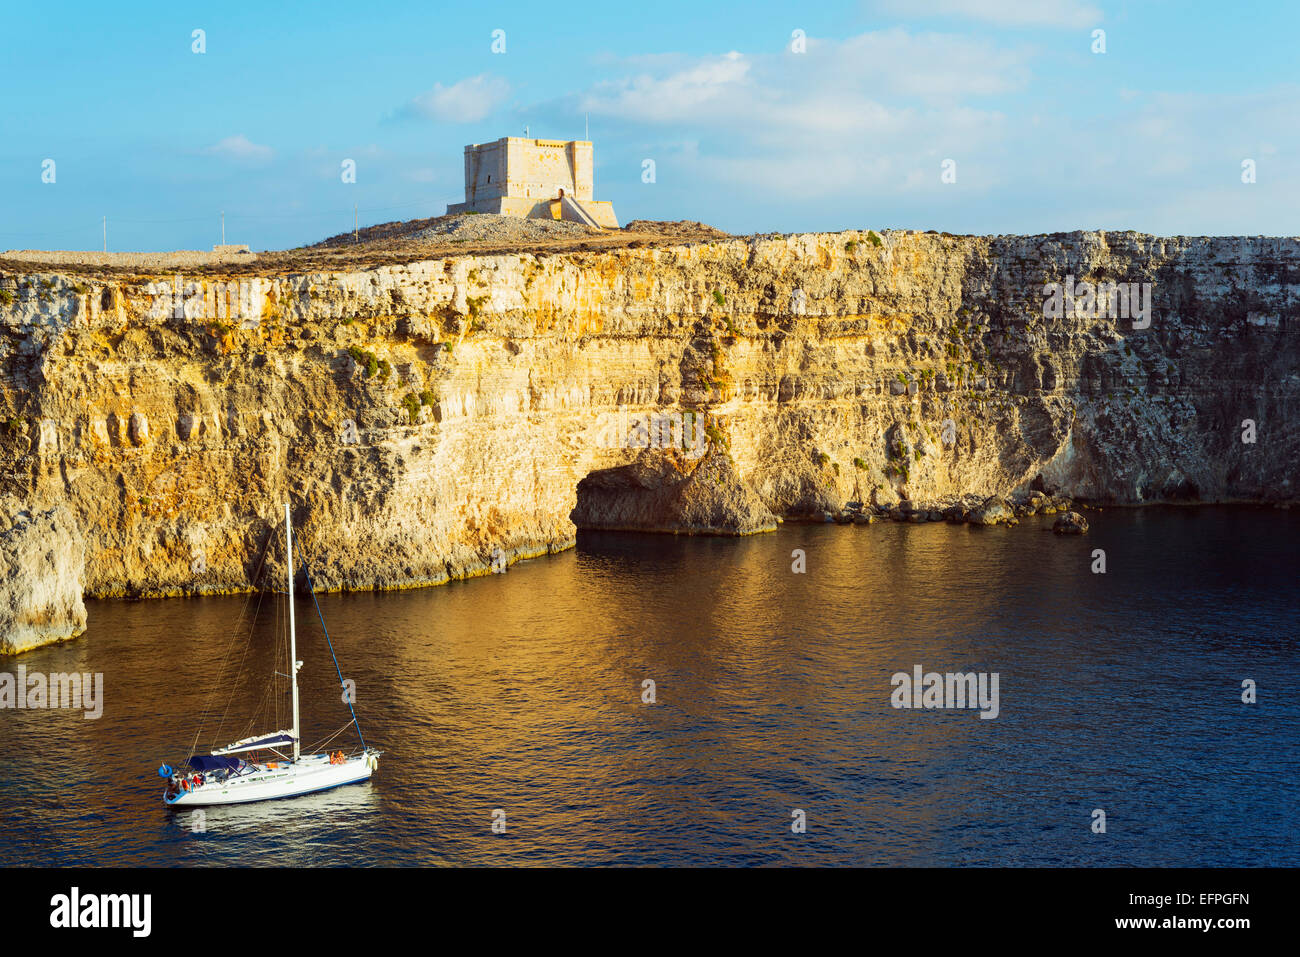 Acantilado Watch Tower, isla de Comino, Malta, el Mediterráneo, Europa Foto de stock